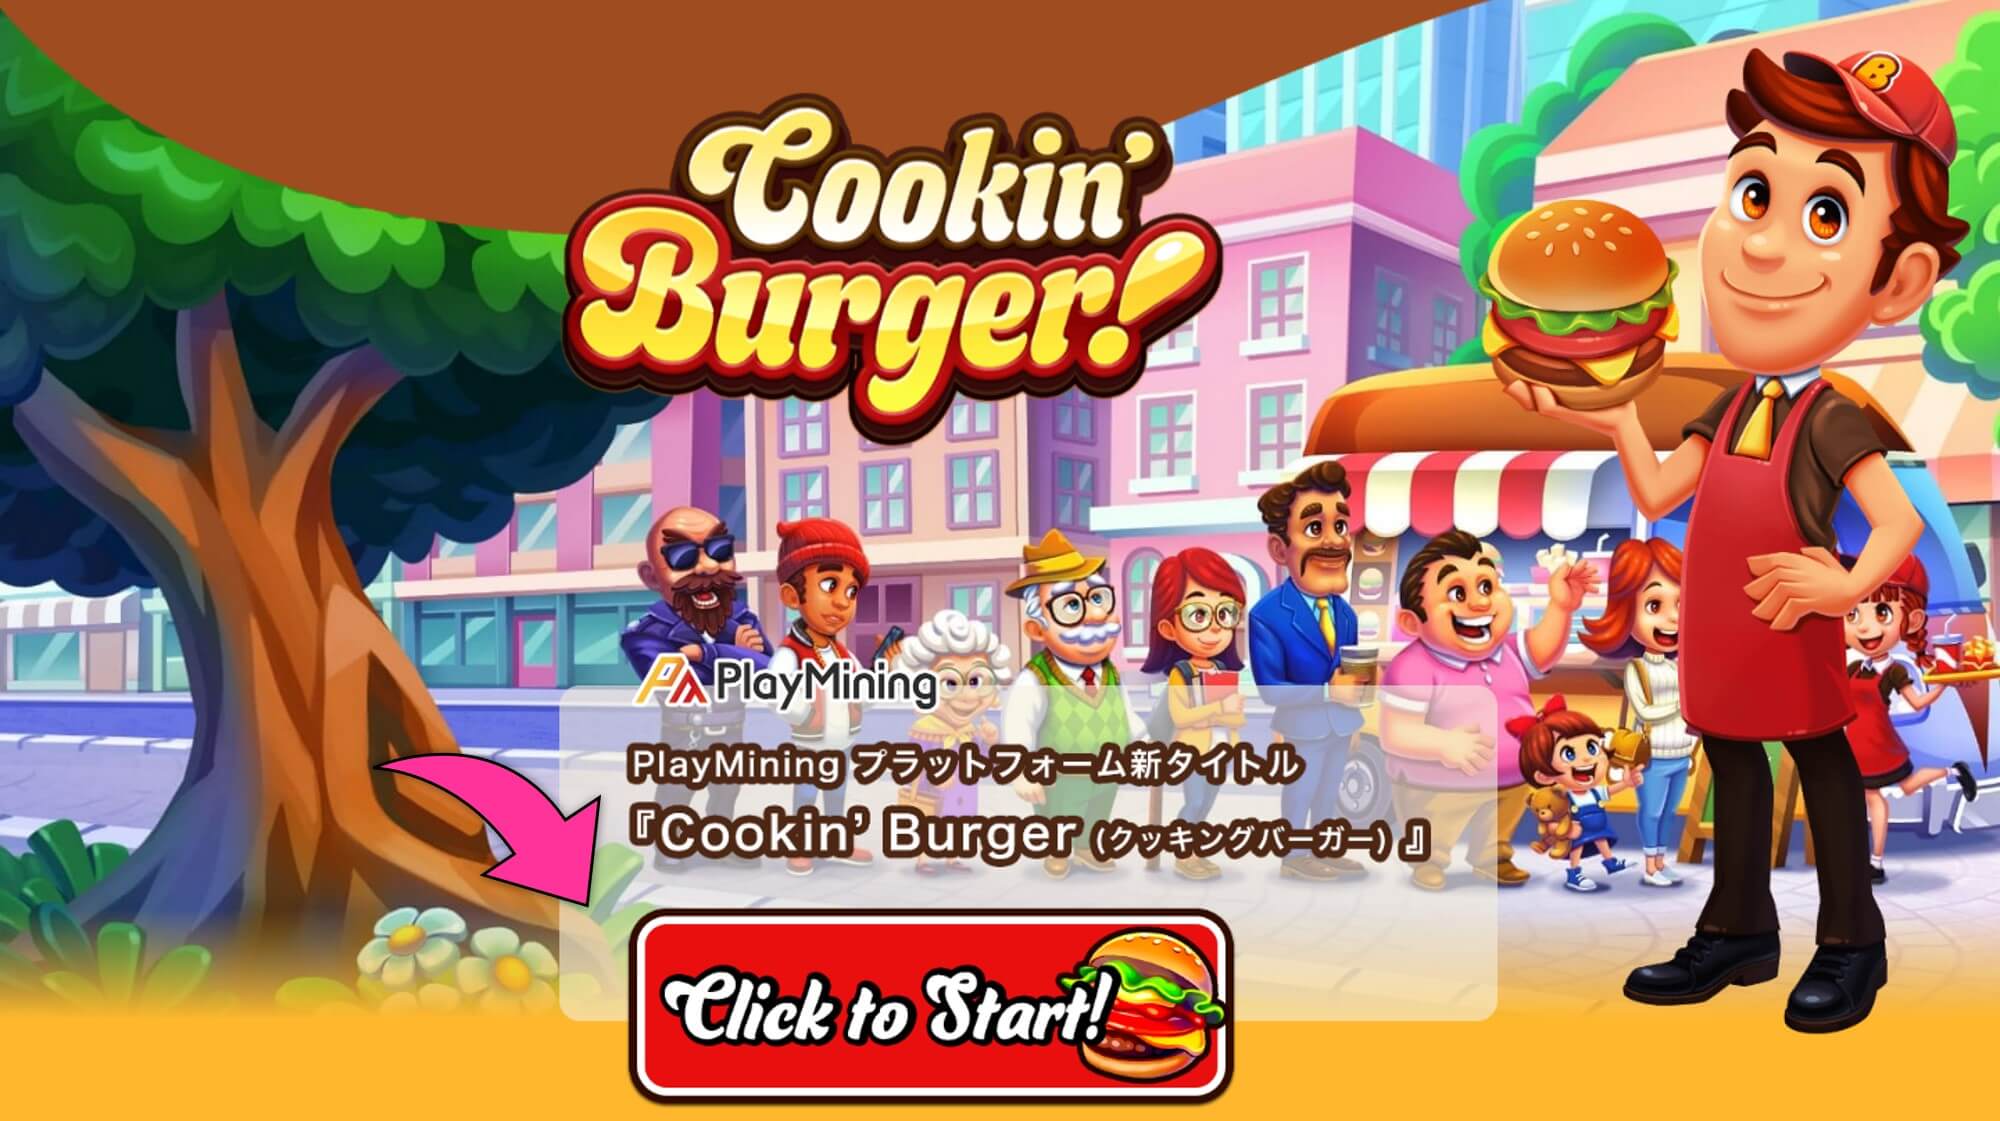 Cookin’Burger公式サイトから「Click to Start！」ボタンを選択して、ゲーム開始